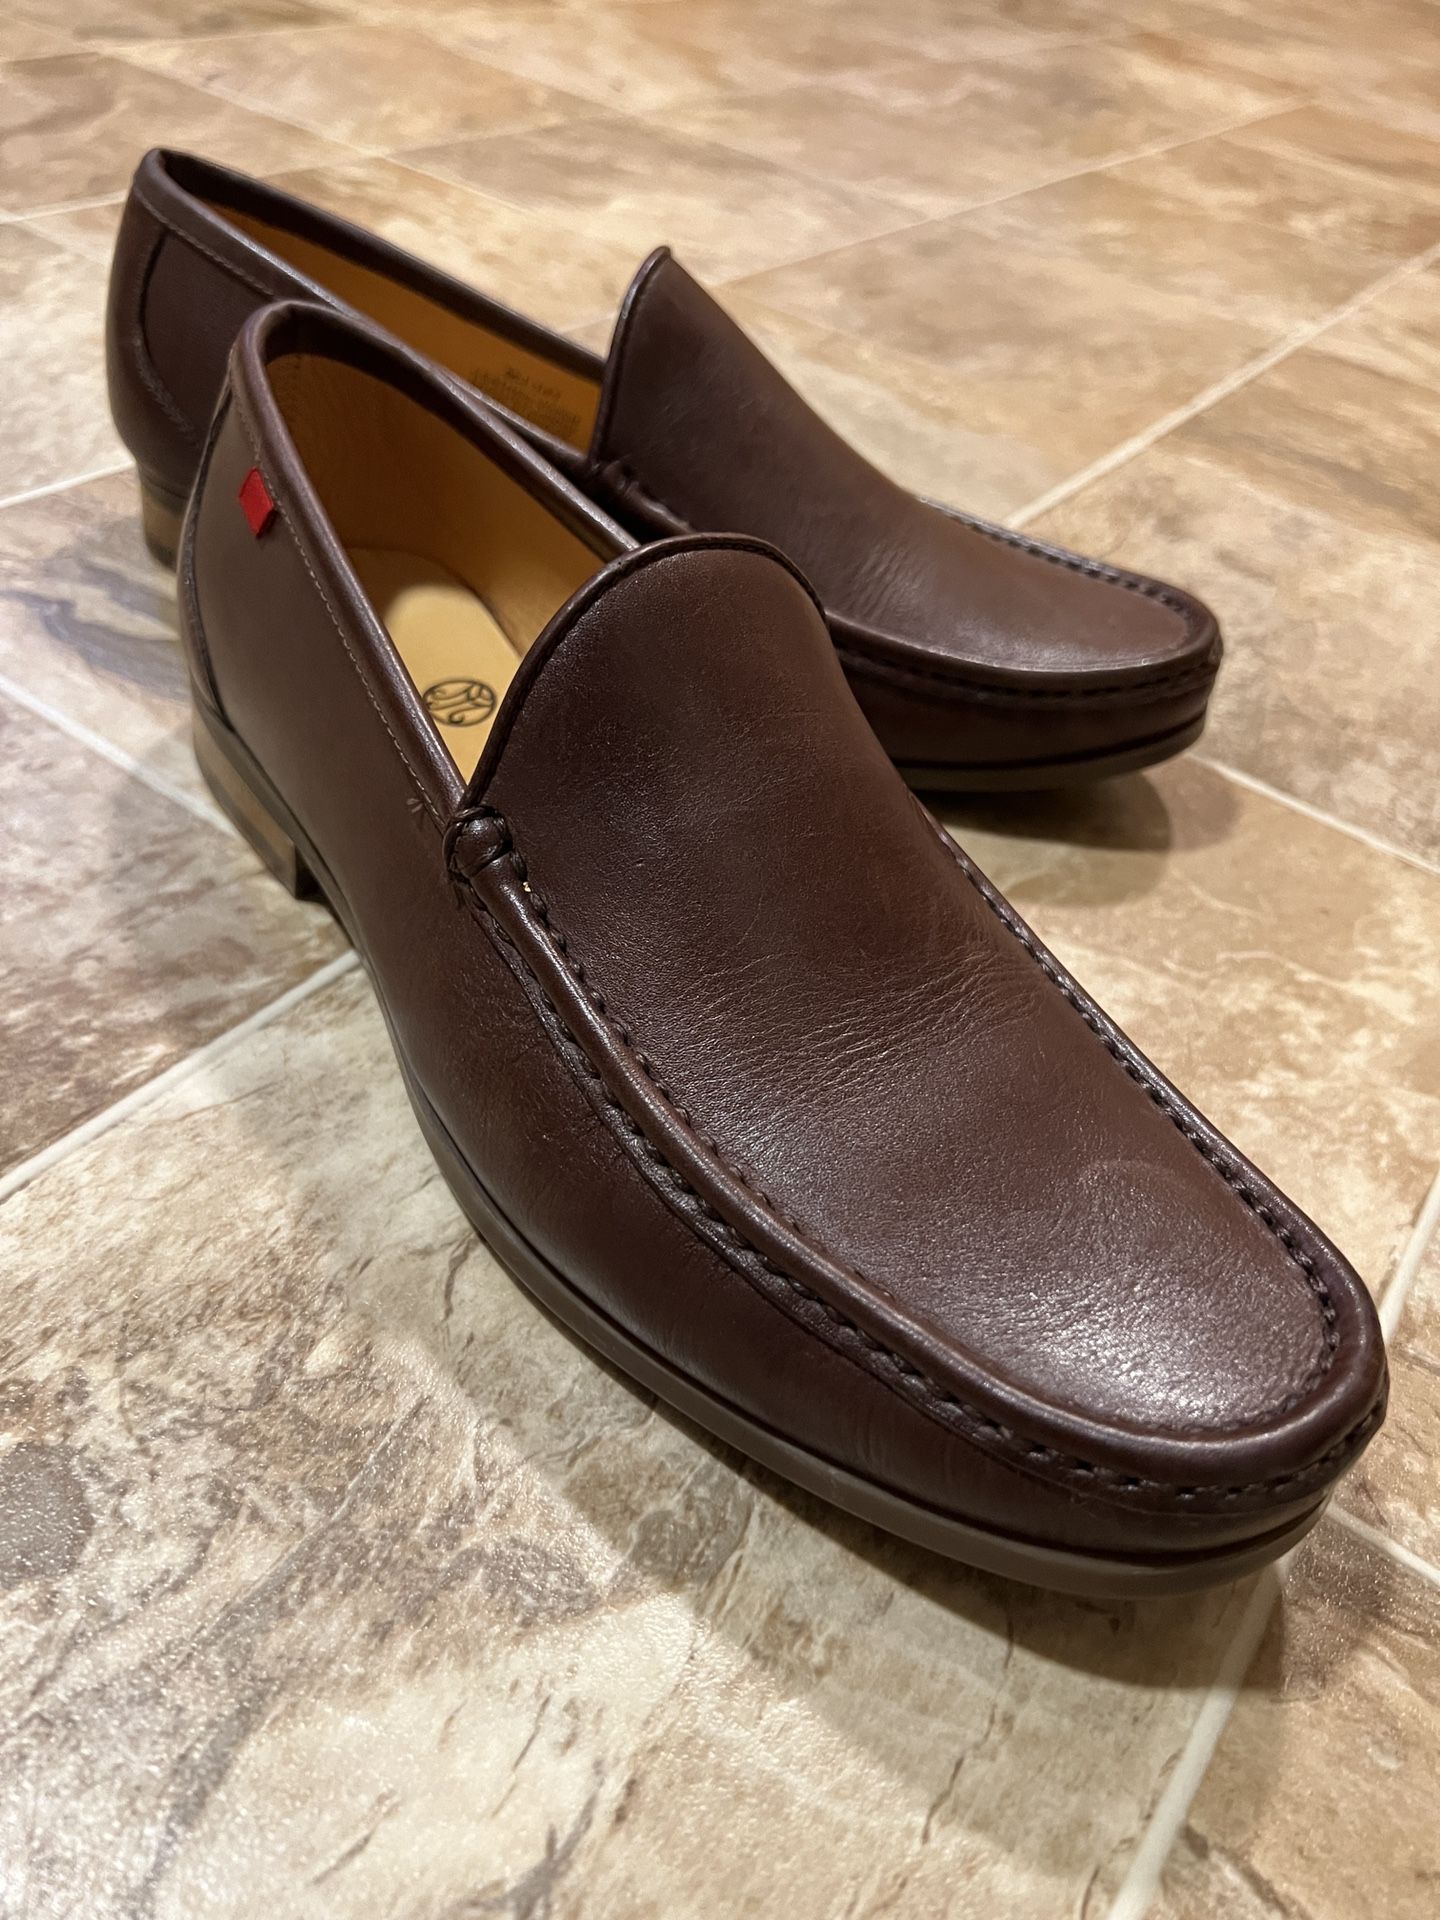 New Marc Joseph Men’s Shoes (sz9.5)